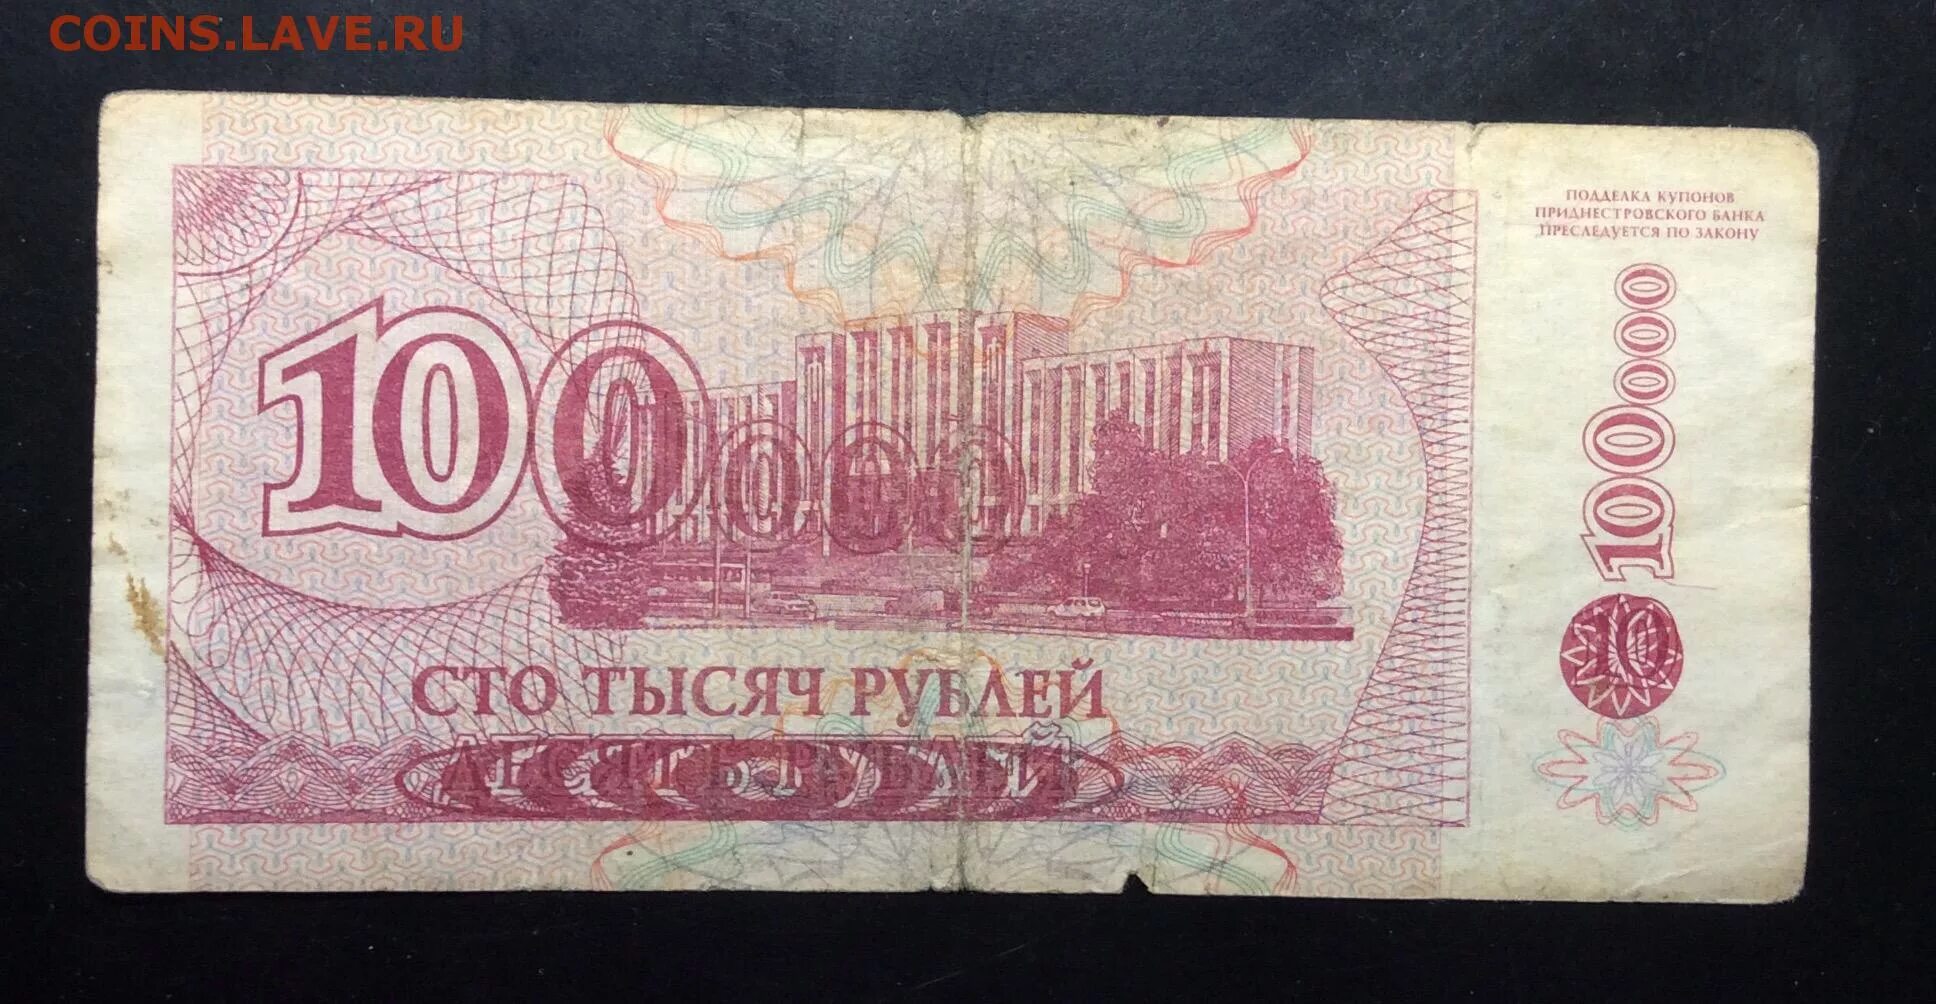 Банкнота 10000 рублей. 10000 Рублей 1994 года. 10 000 Рублей бумажные. 10 Тысяч рублей бумажные. Сто пятьдесят девять рублей